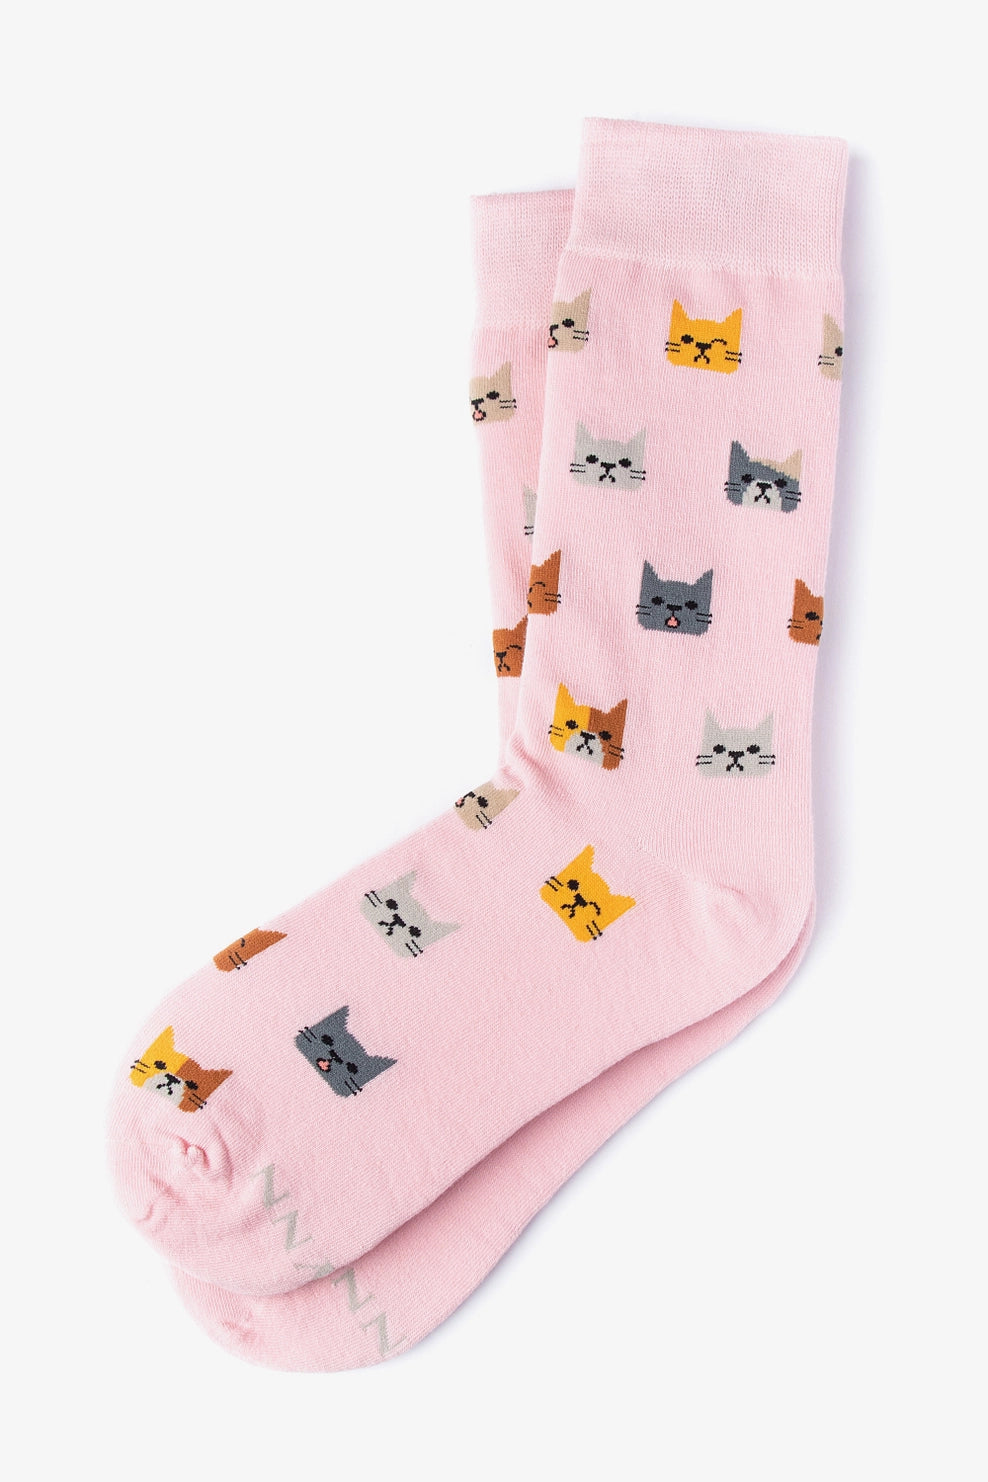 Socks Not Kitten Around